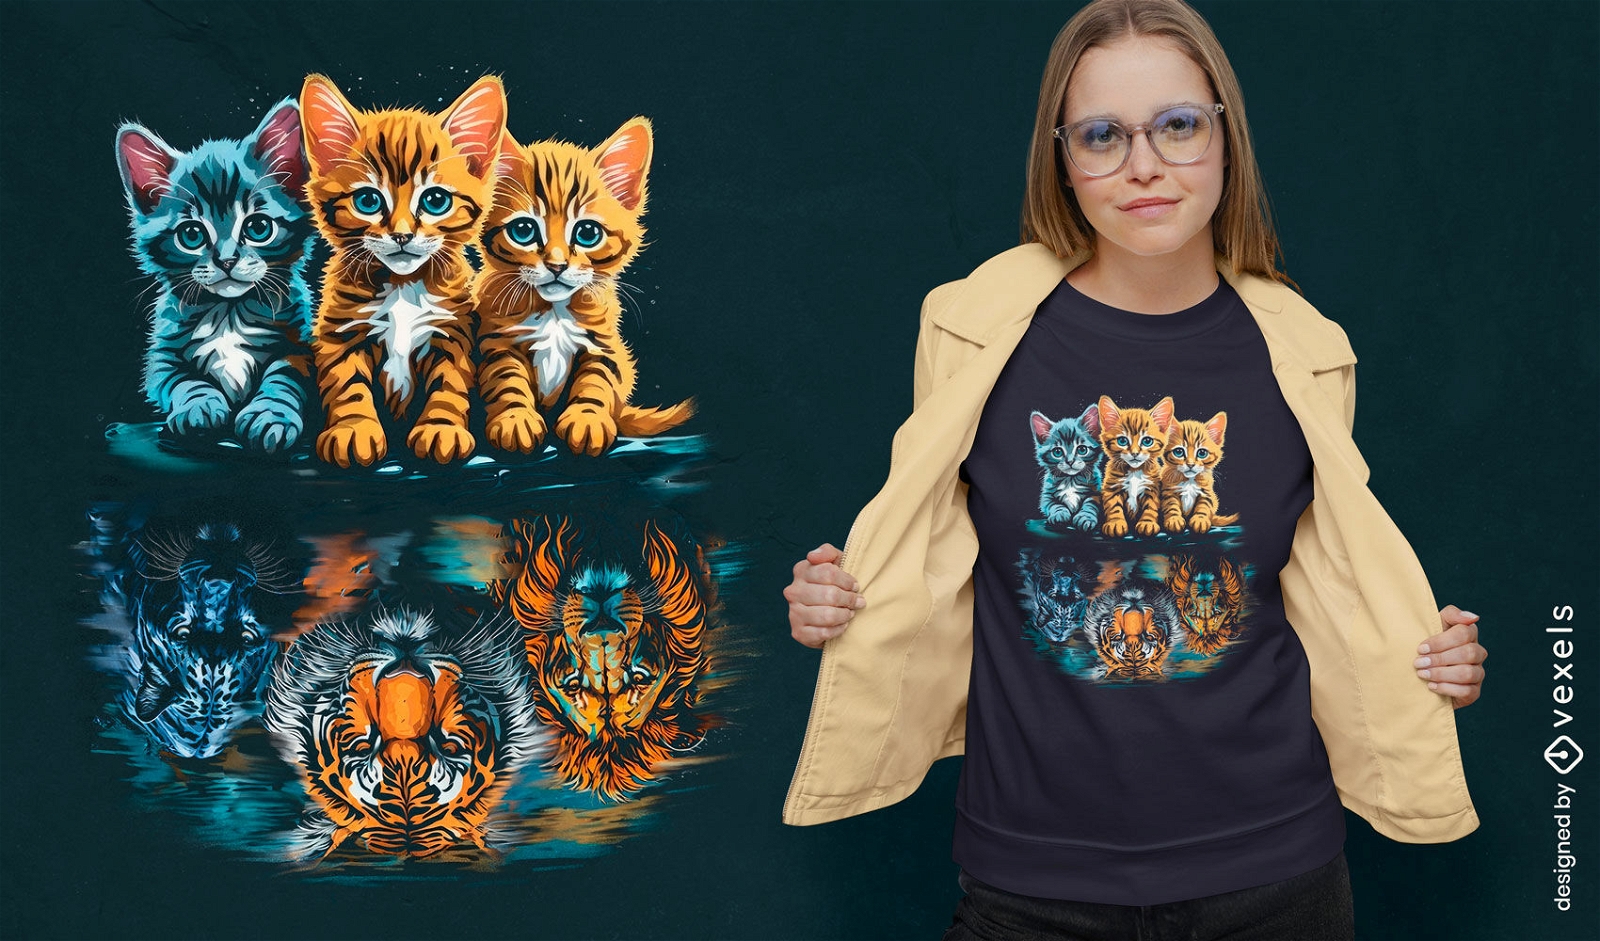 Adorable dise?o de camiseta de tr?o de gatitos.